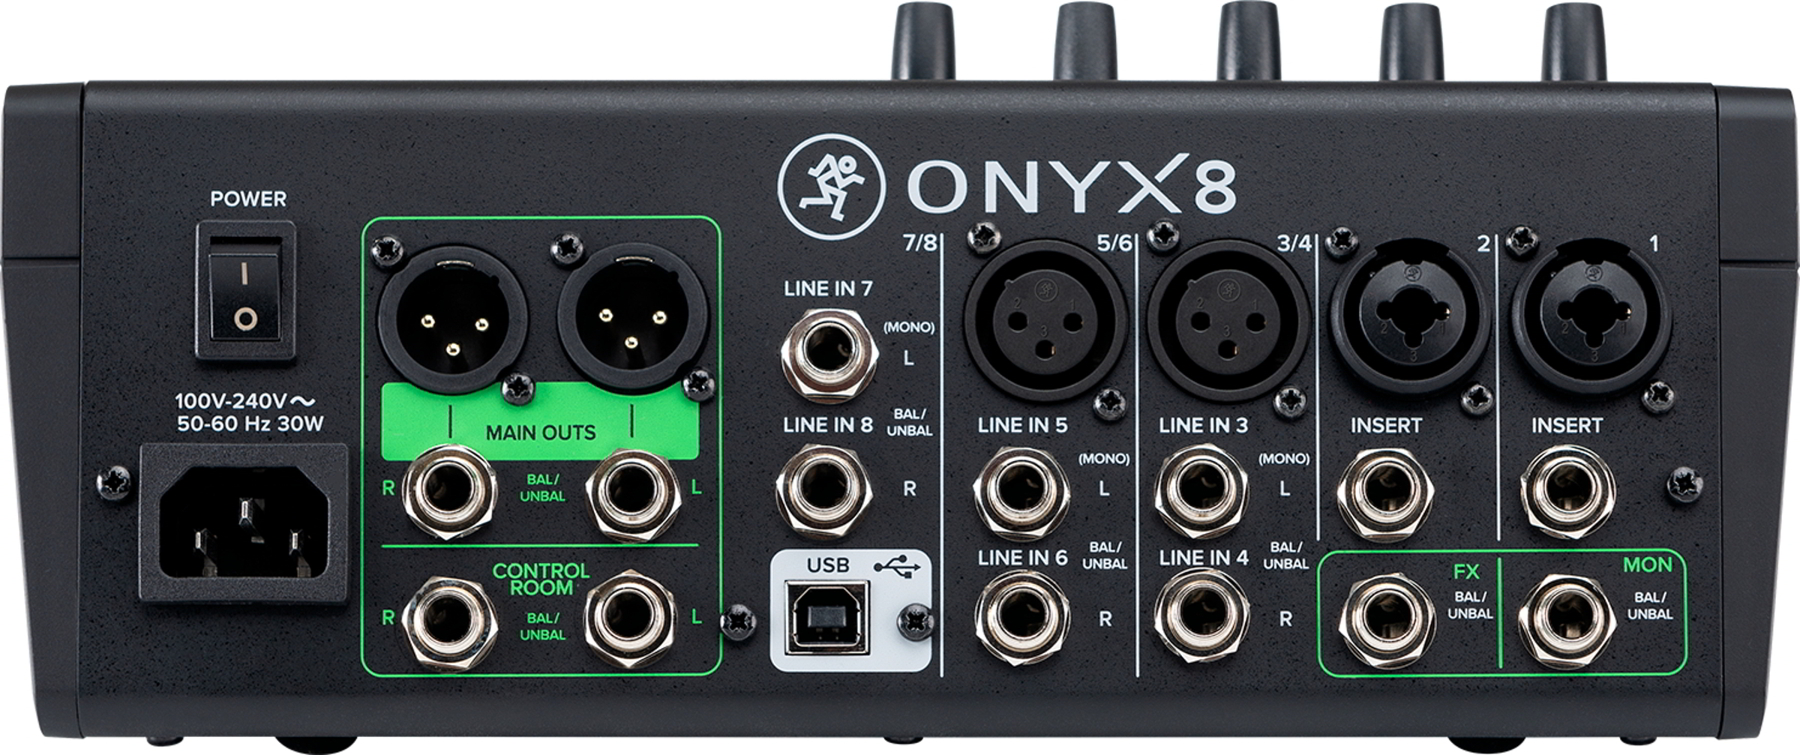 Onyx8背面画像